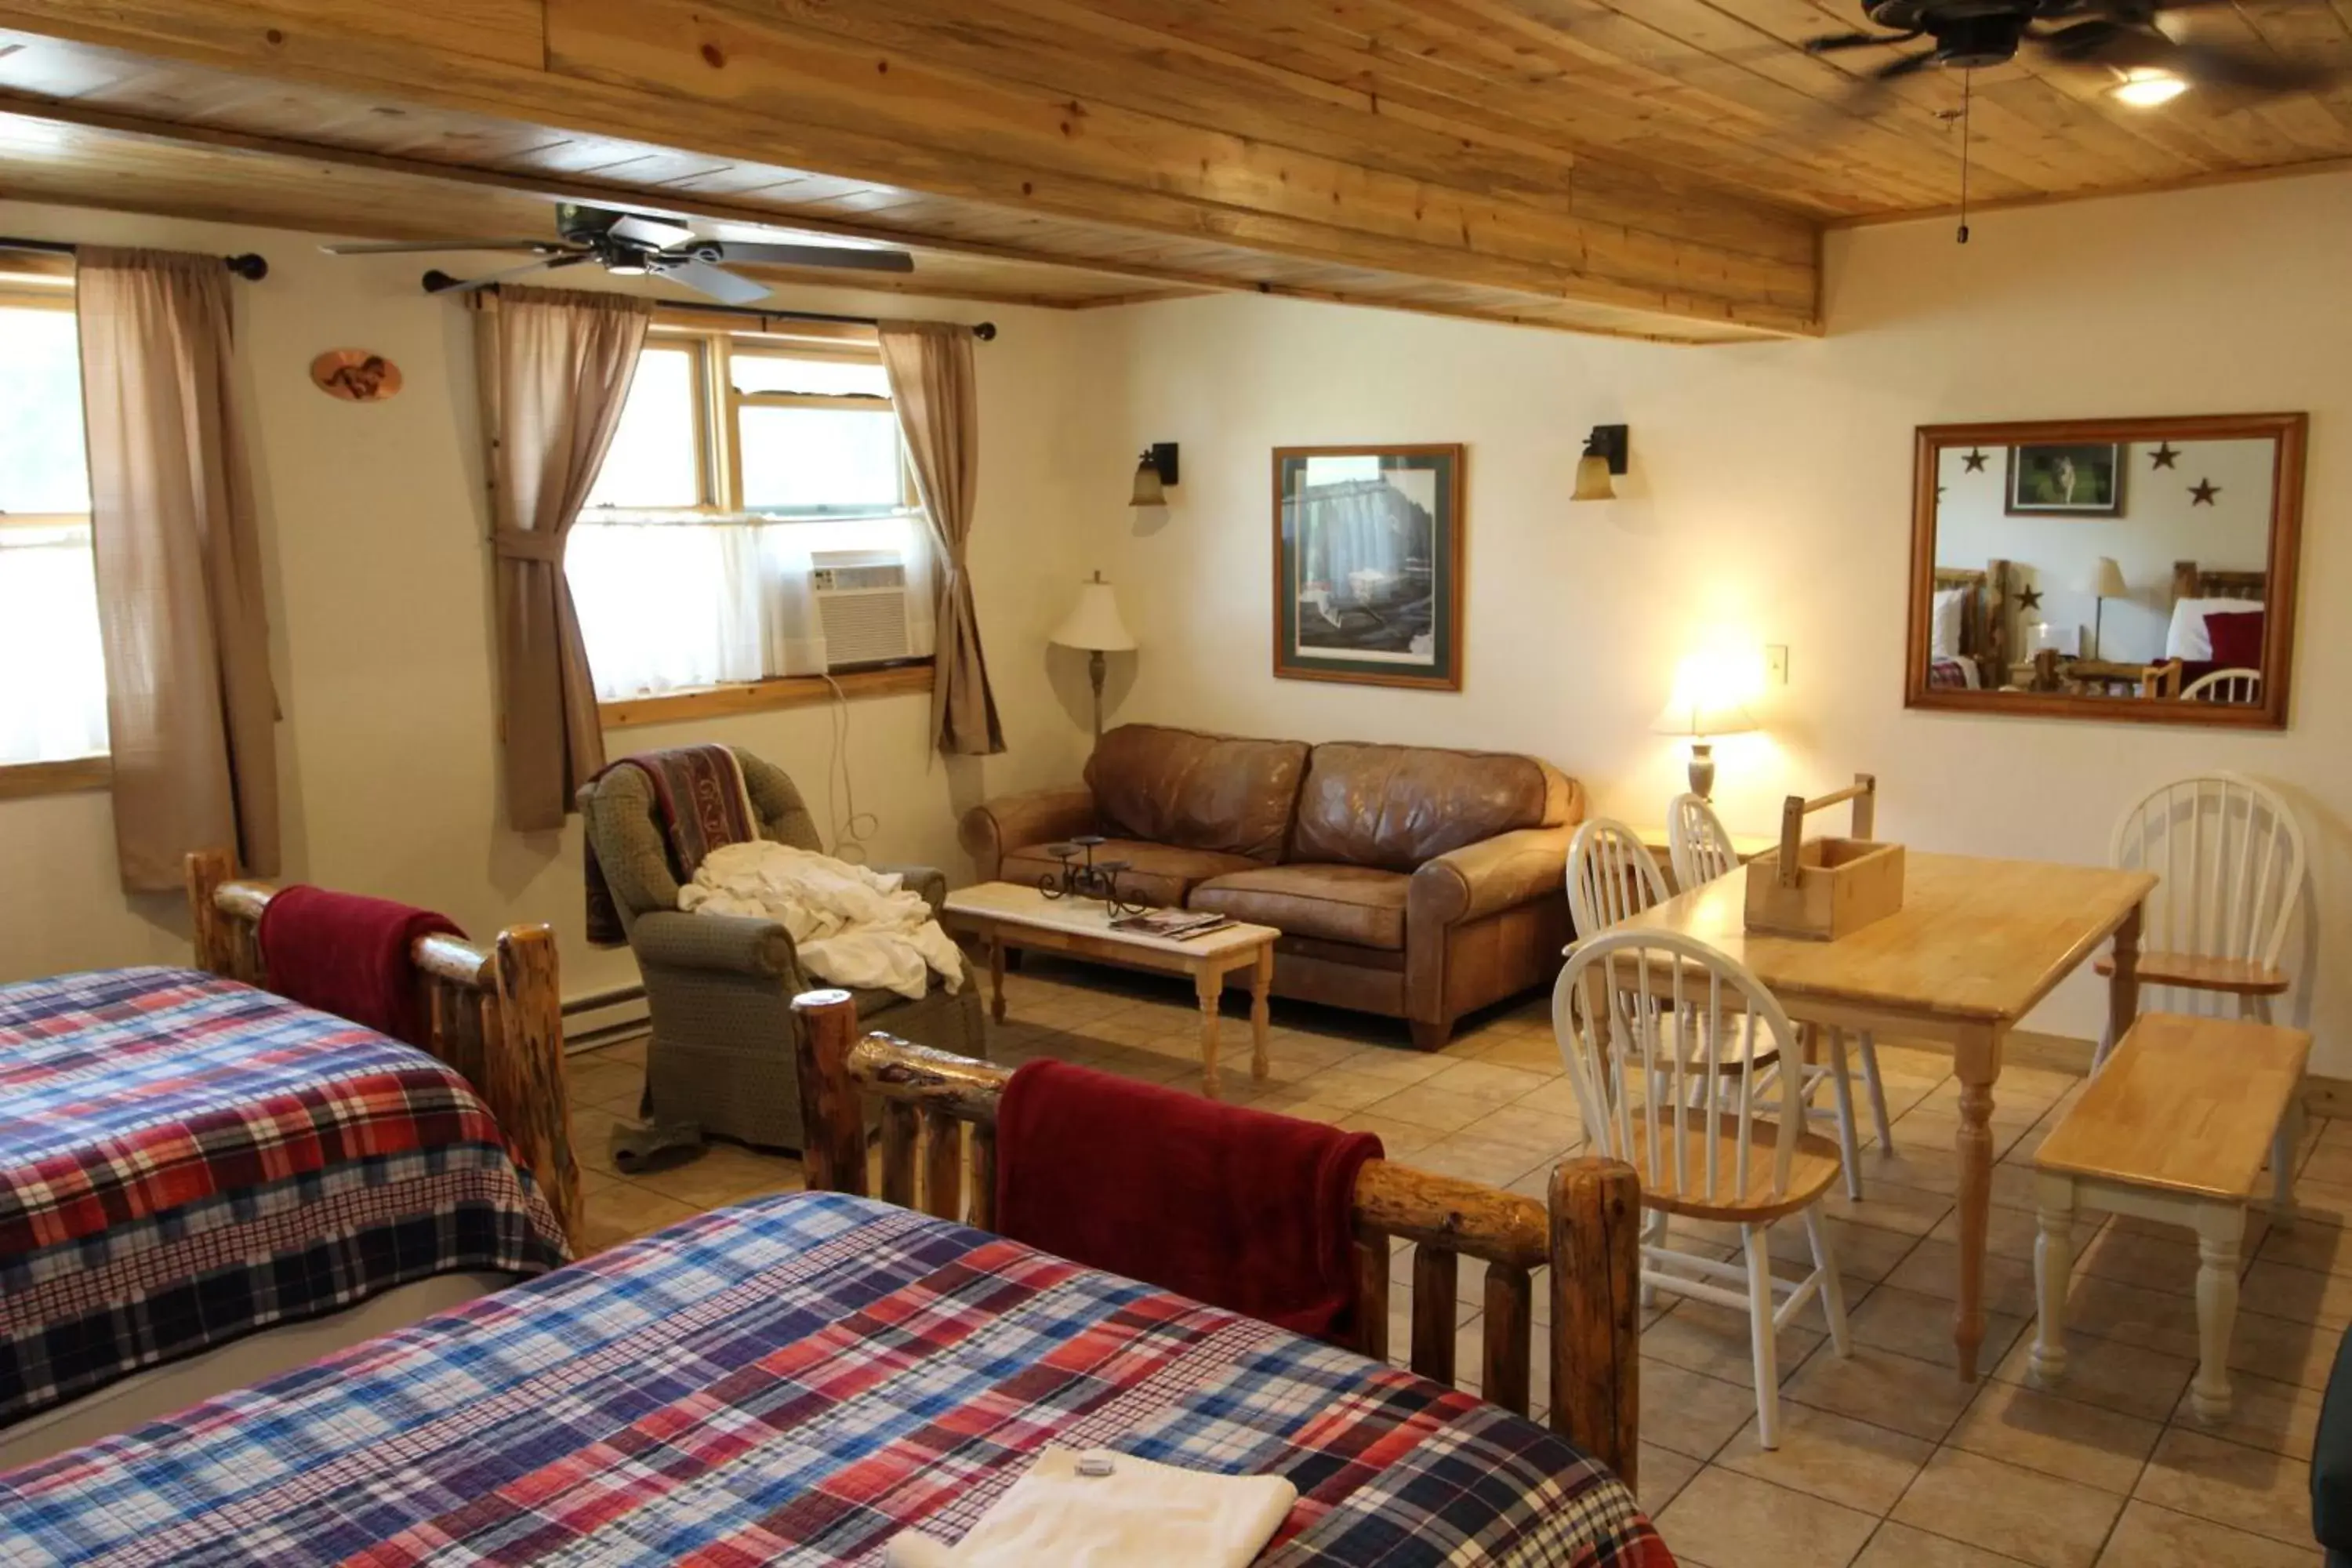 Other, Seating Area in Wapiti Lodge